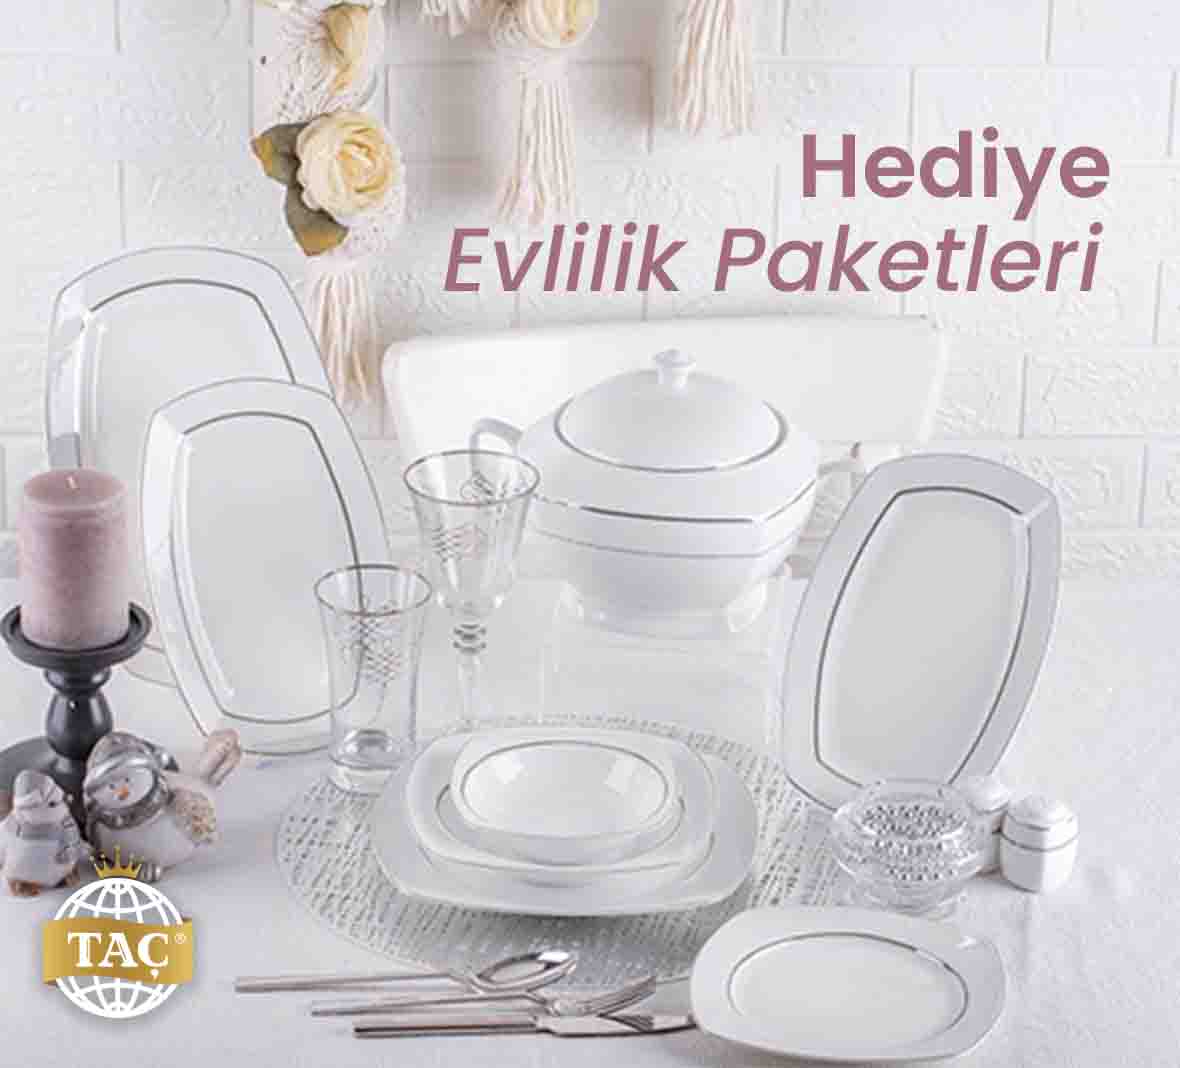 Hediye Evlilik Paketleri Fiyatı Fiyatları - Tacev.com